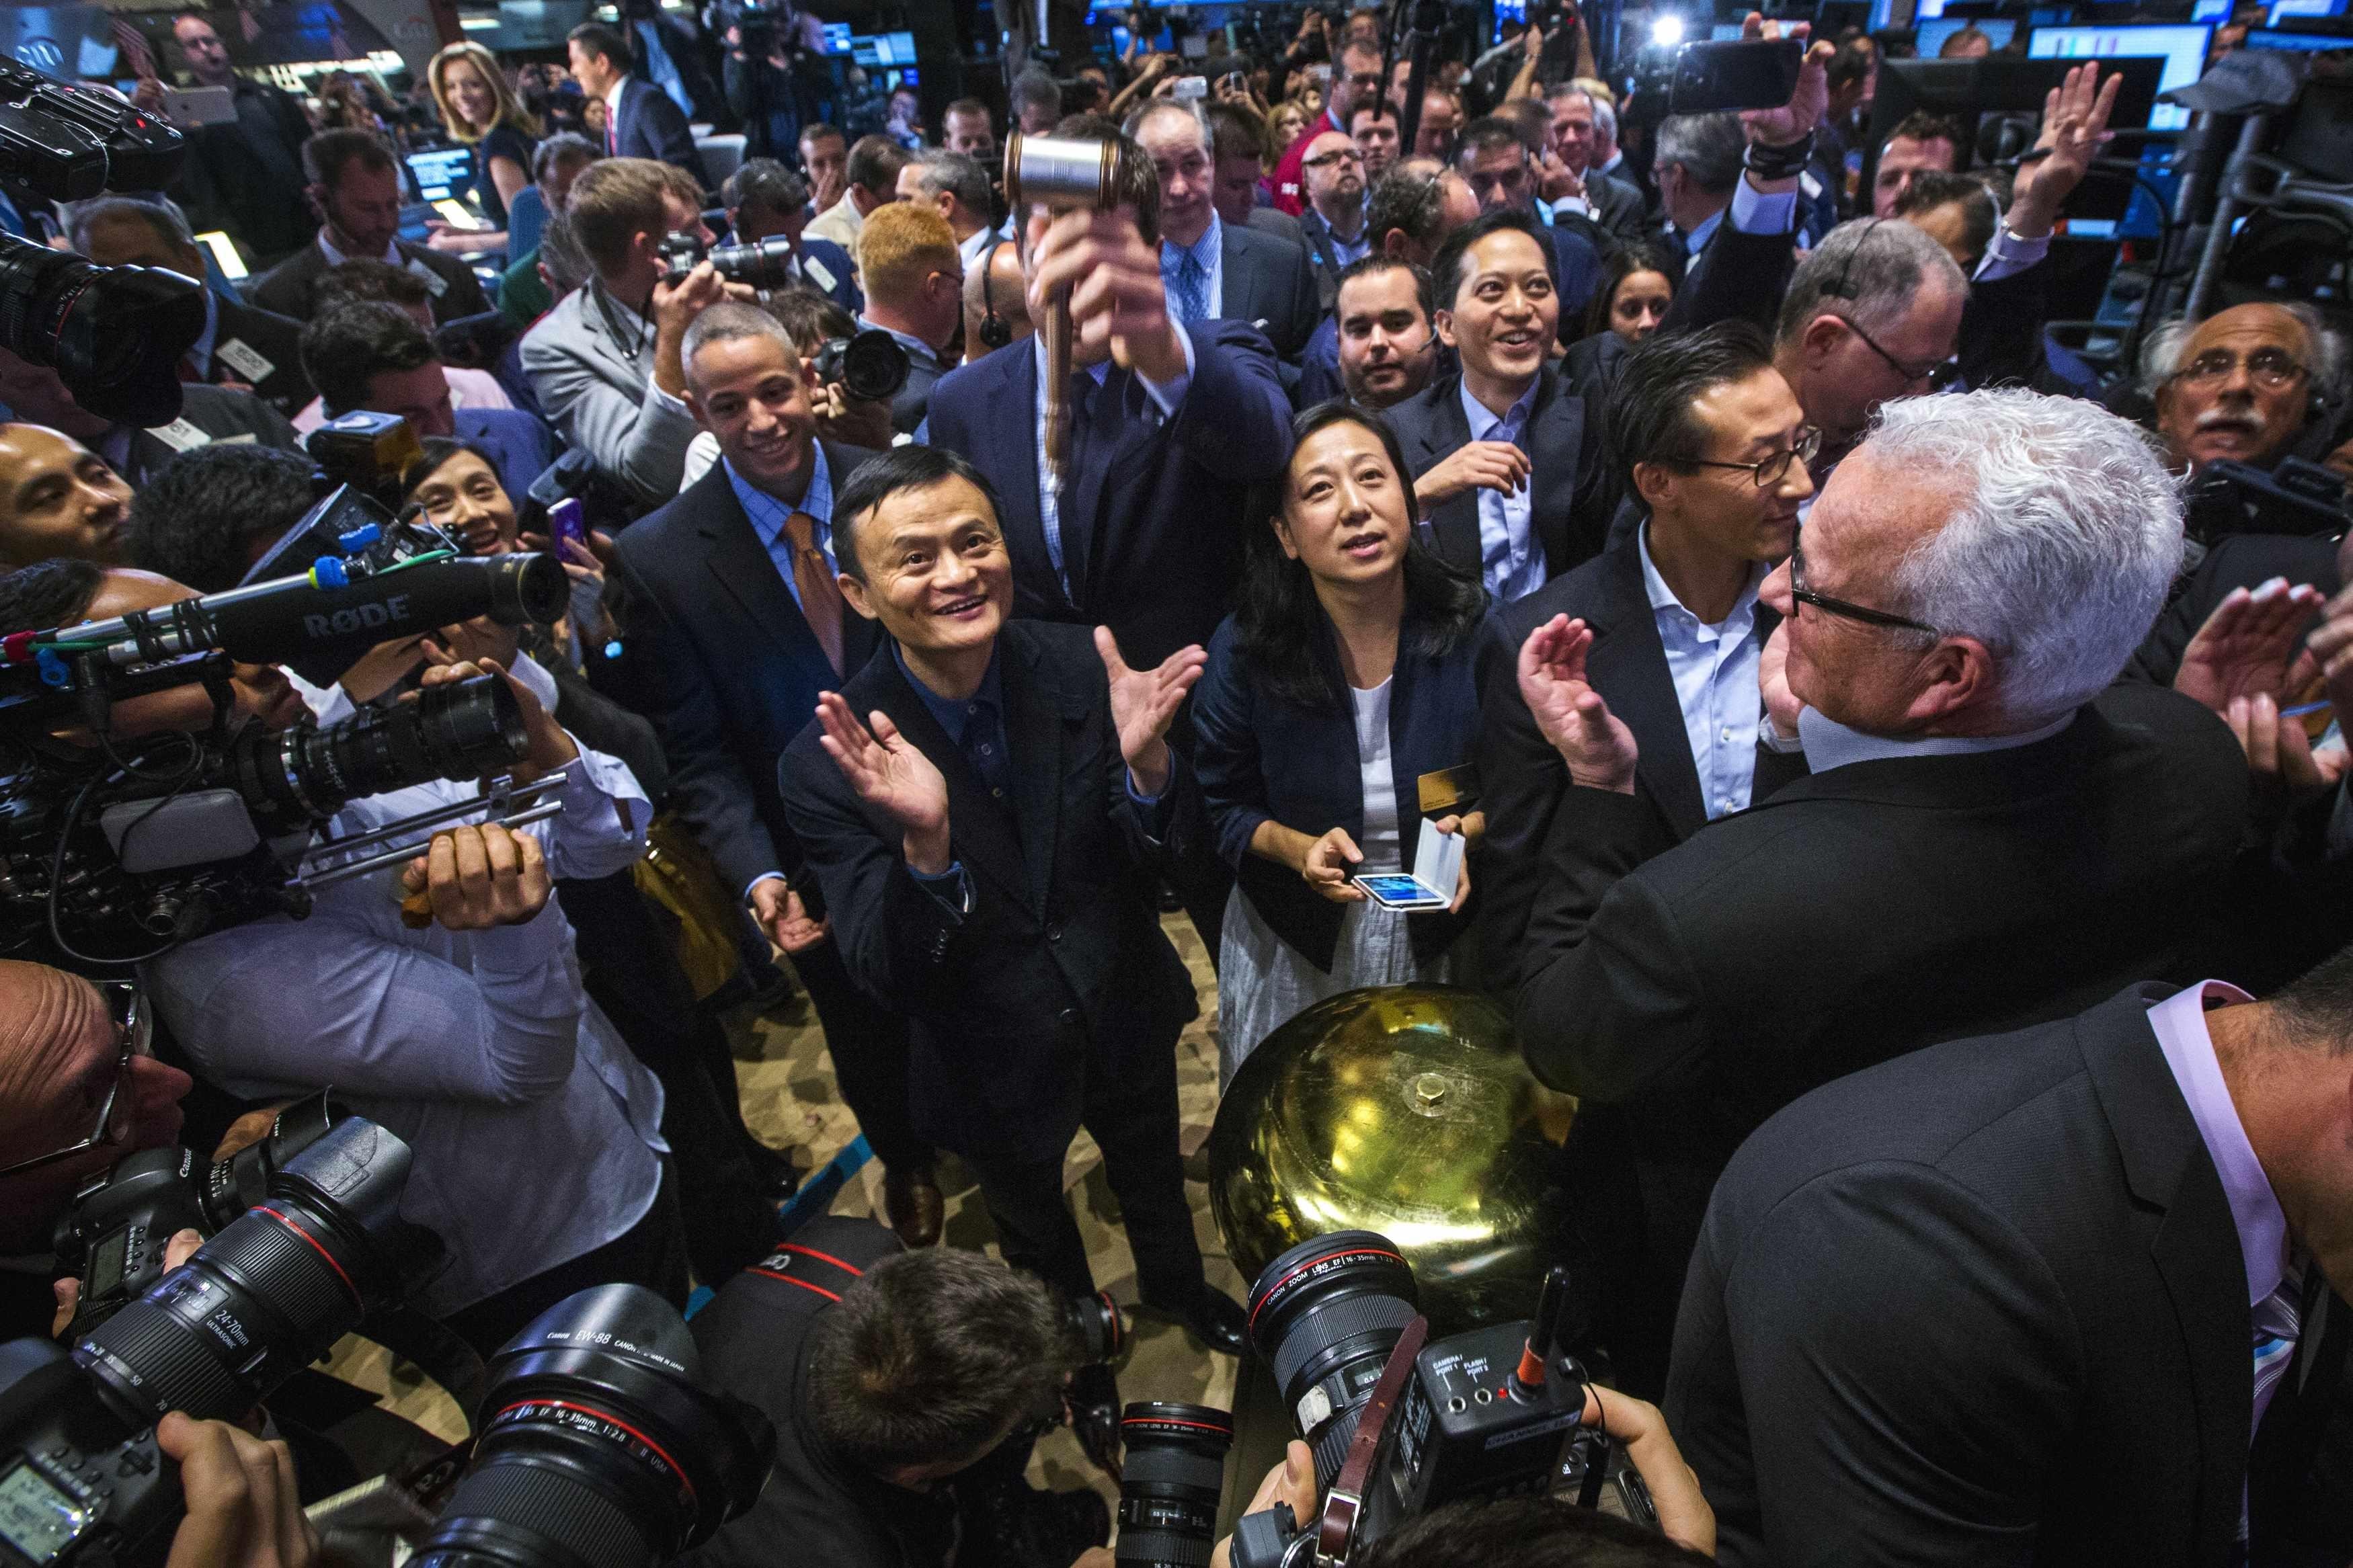 
Năm 2019, Alibaba tiếp tục lên sàn chứng khoán Hong Long với giá cổ phiếu phát hành phiên đầu tiên được định giá ở mức 176 HKD (khoảng&nbsp;22,5 USD)
